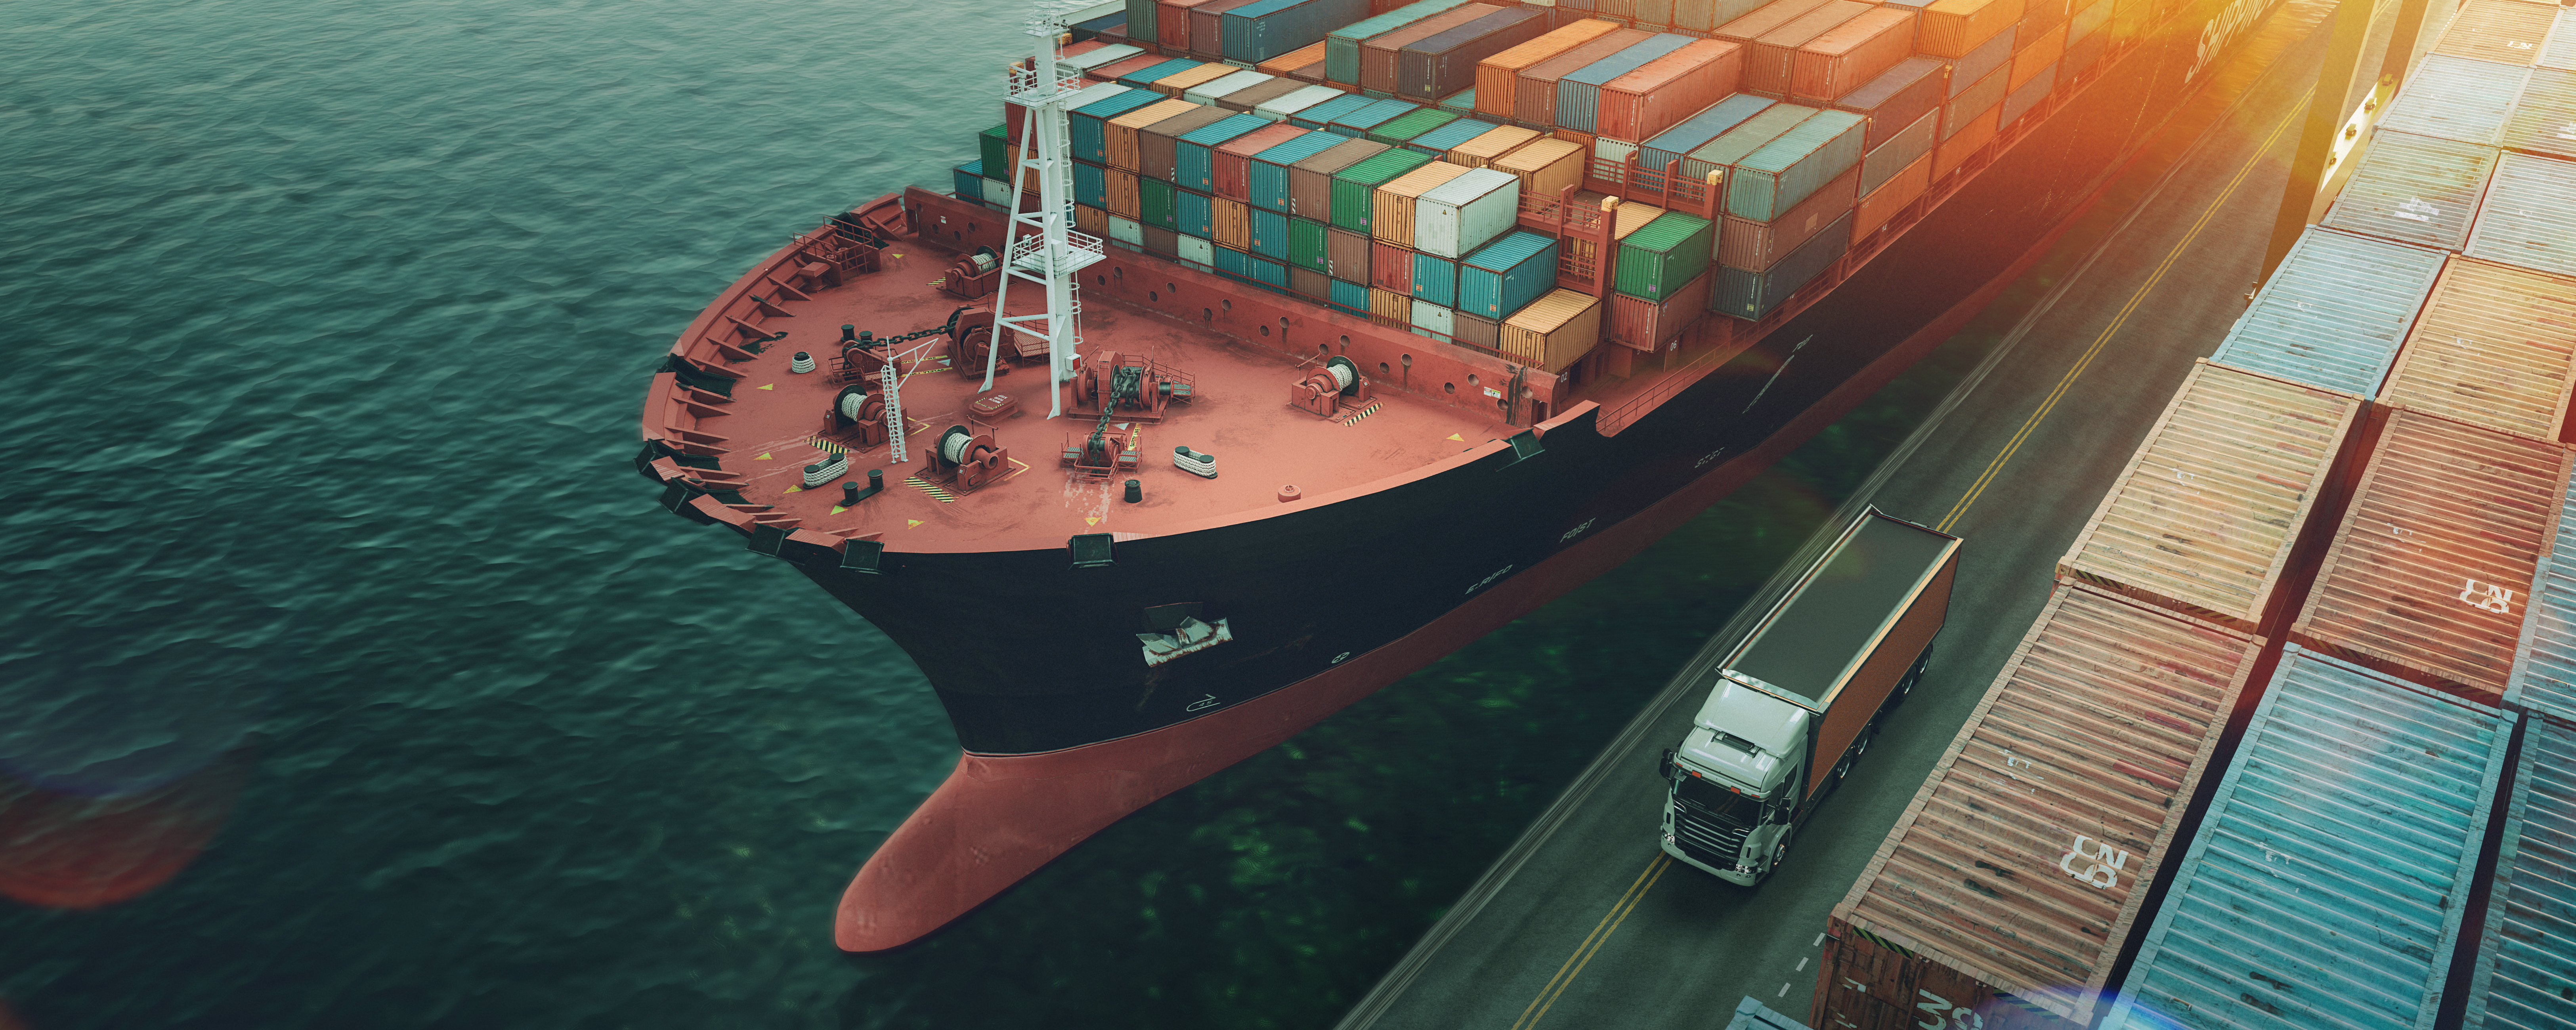 Prevoz in logistika kontejnerske tovorne ladje in tovornega letala.3D izris in ilustracija.